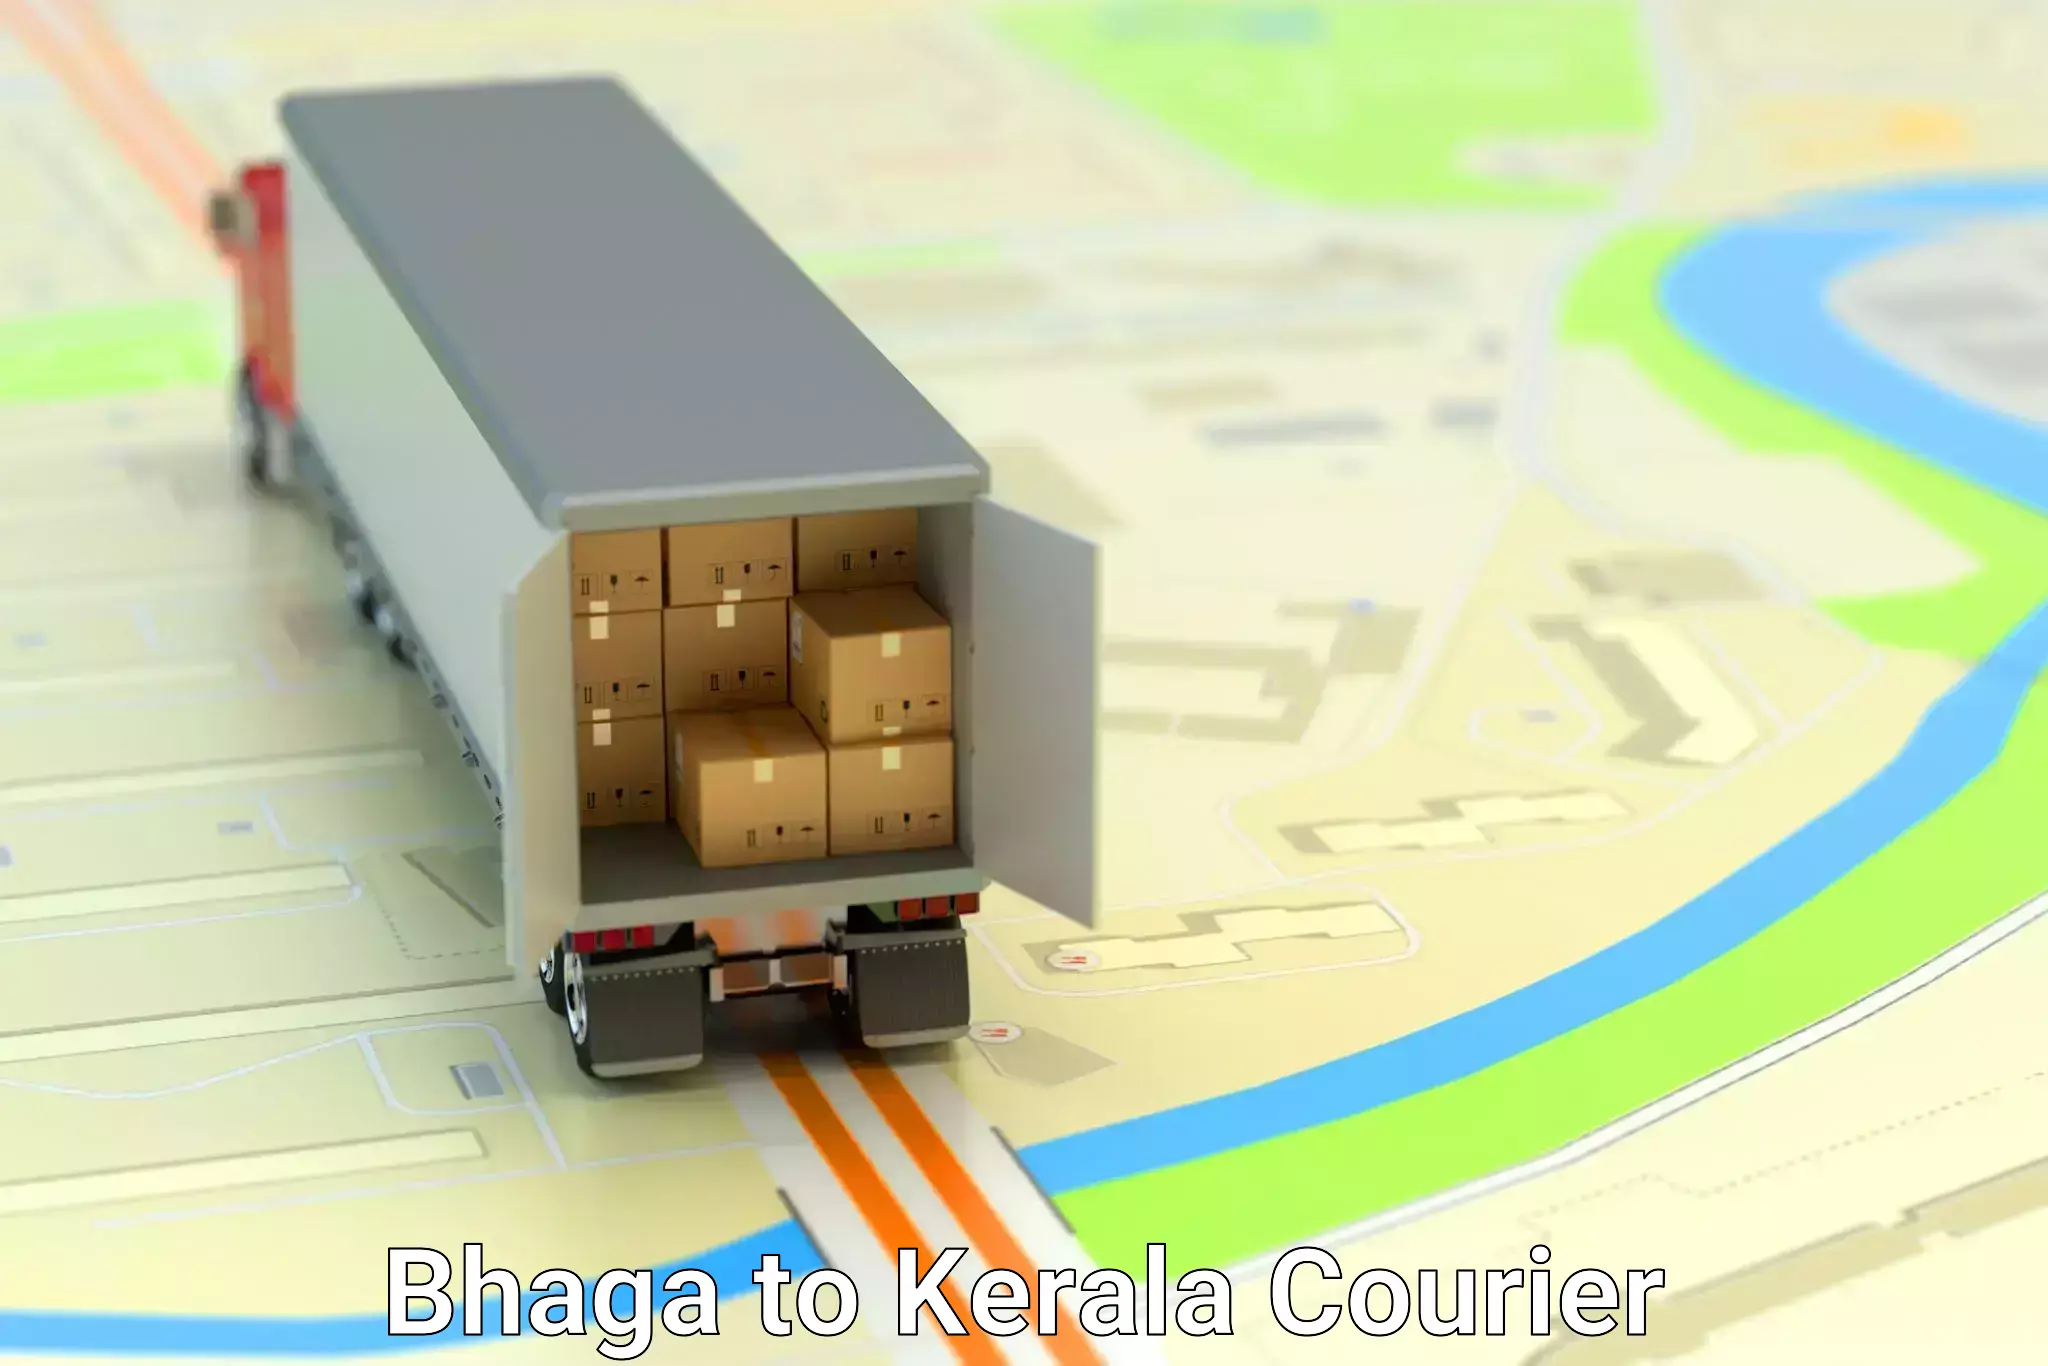 Flexible delivery scheduling in Bhaga to Thiruvananthapuram